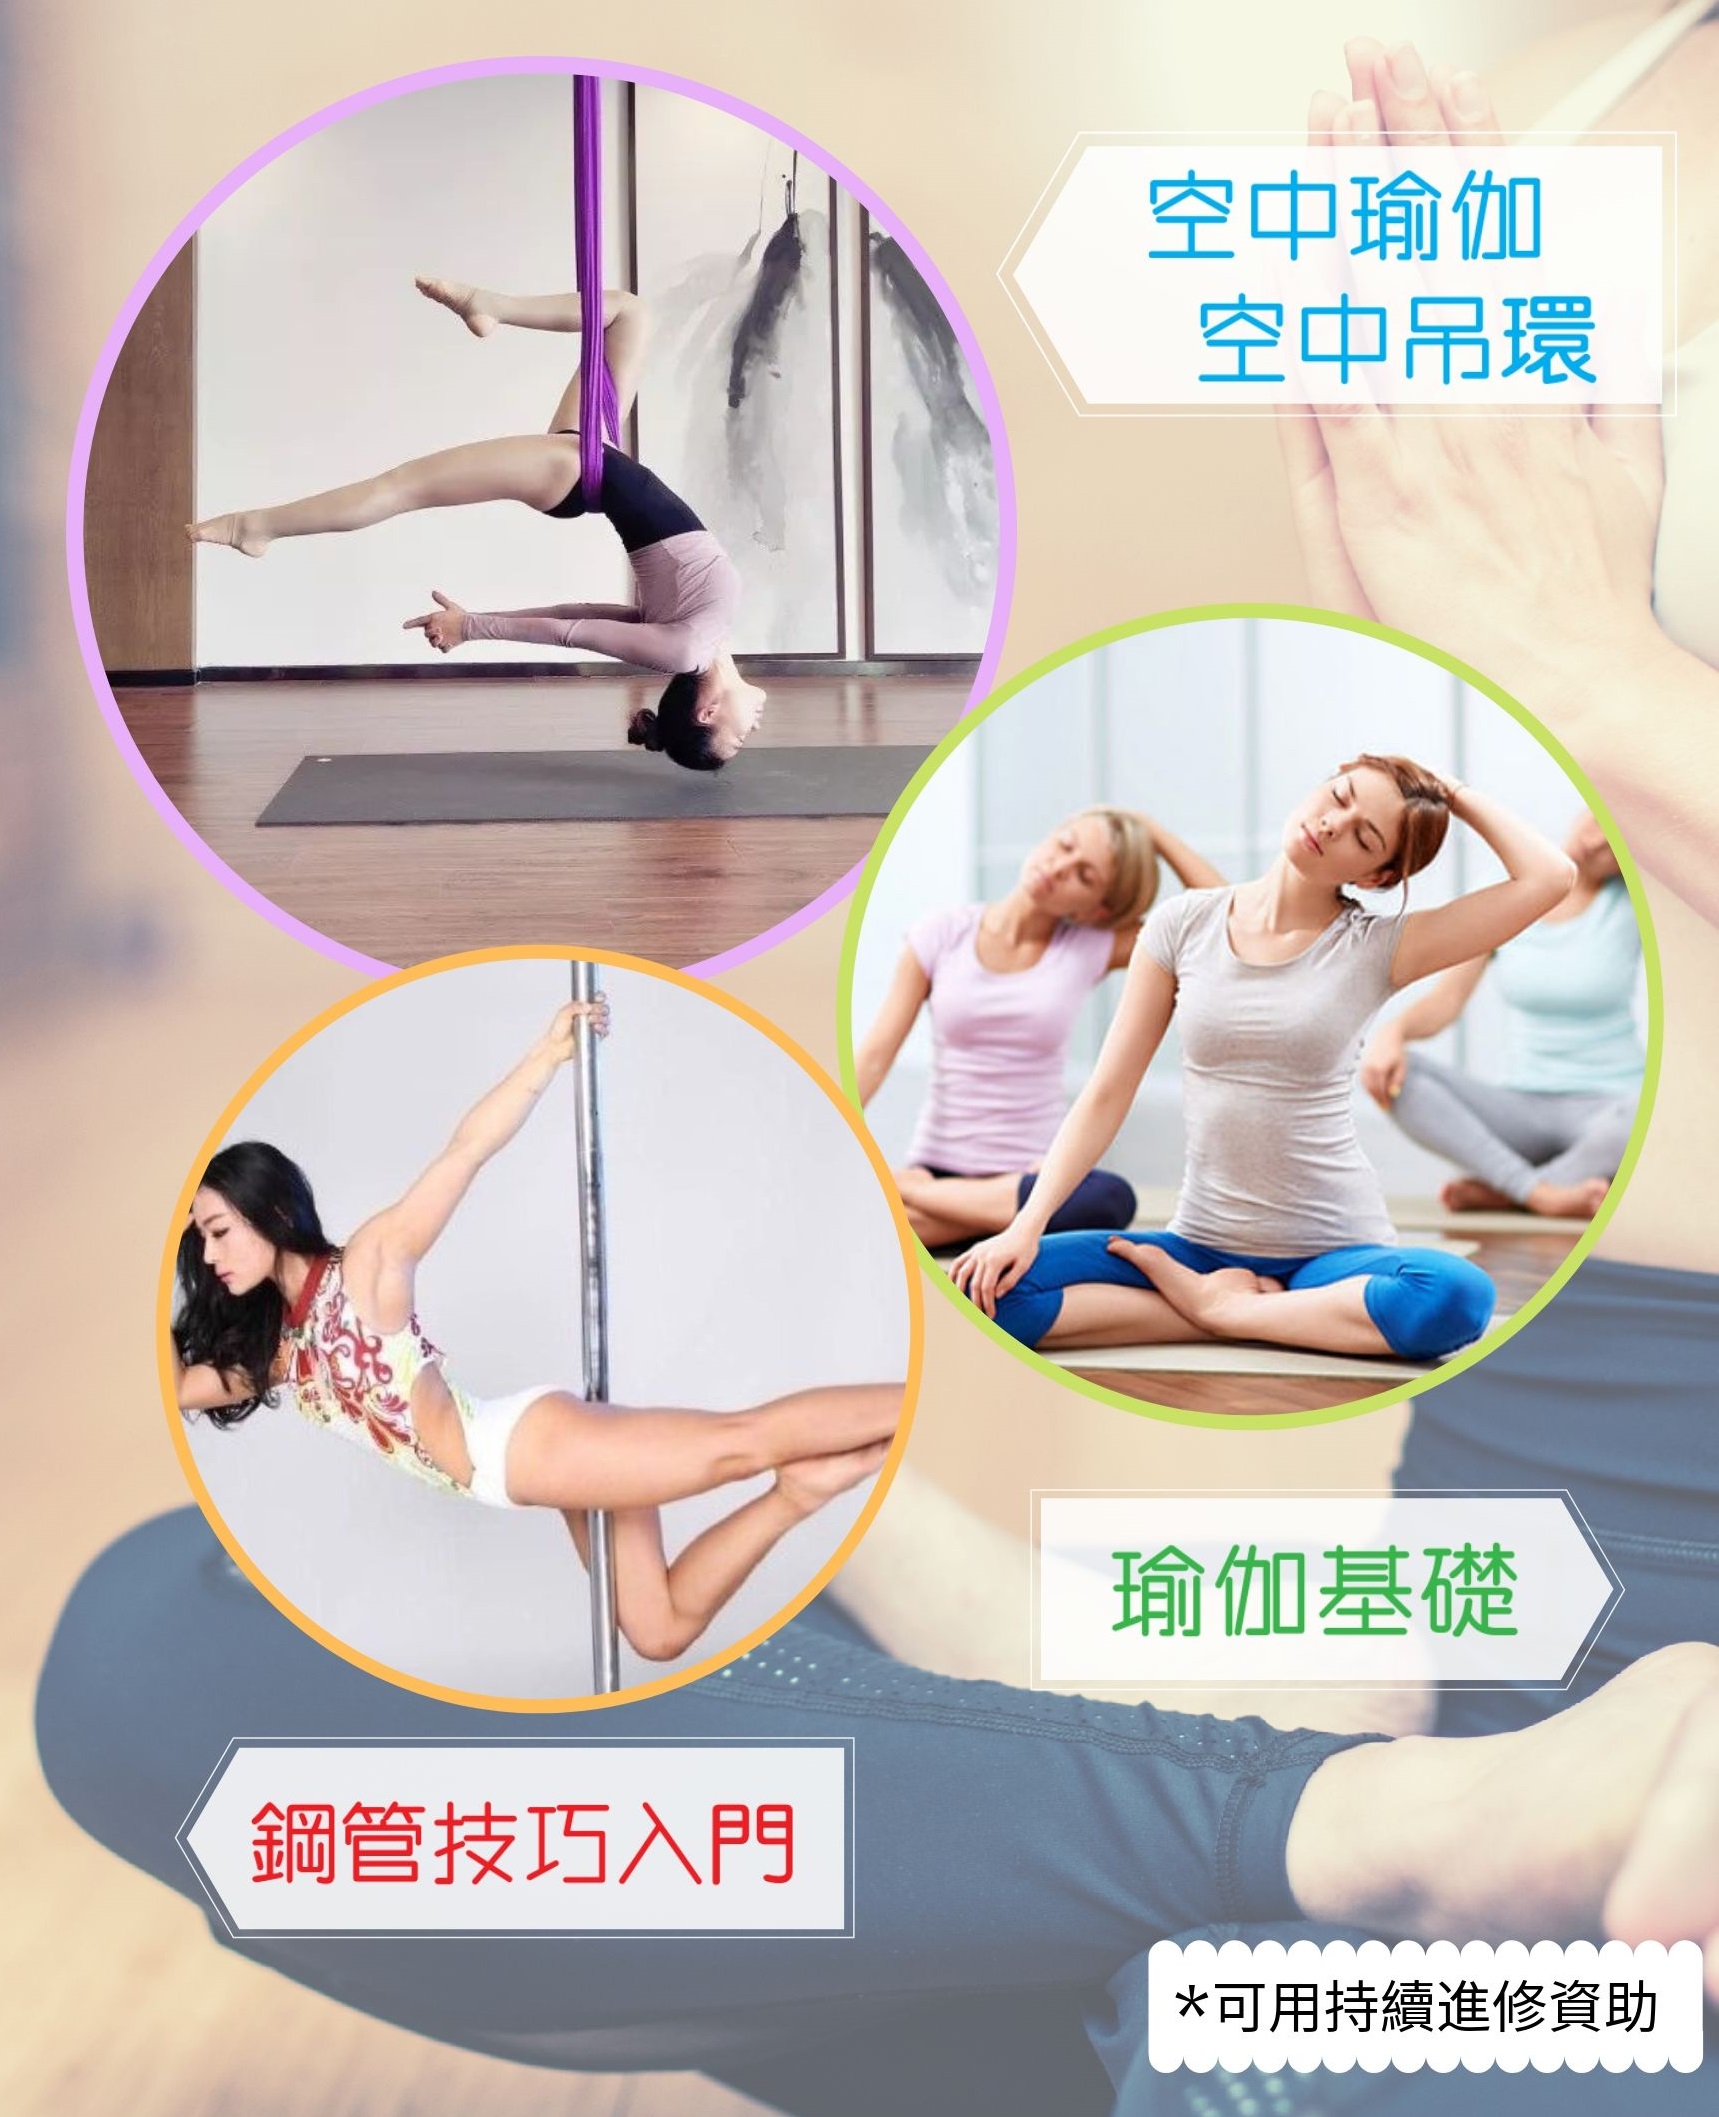 澳門教育進修平台 Macao Education Platform: 空中瑜伽班